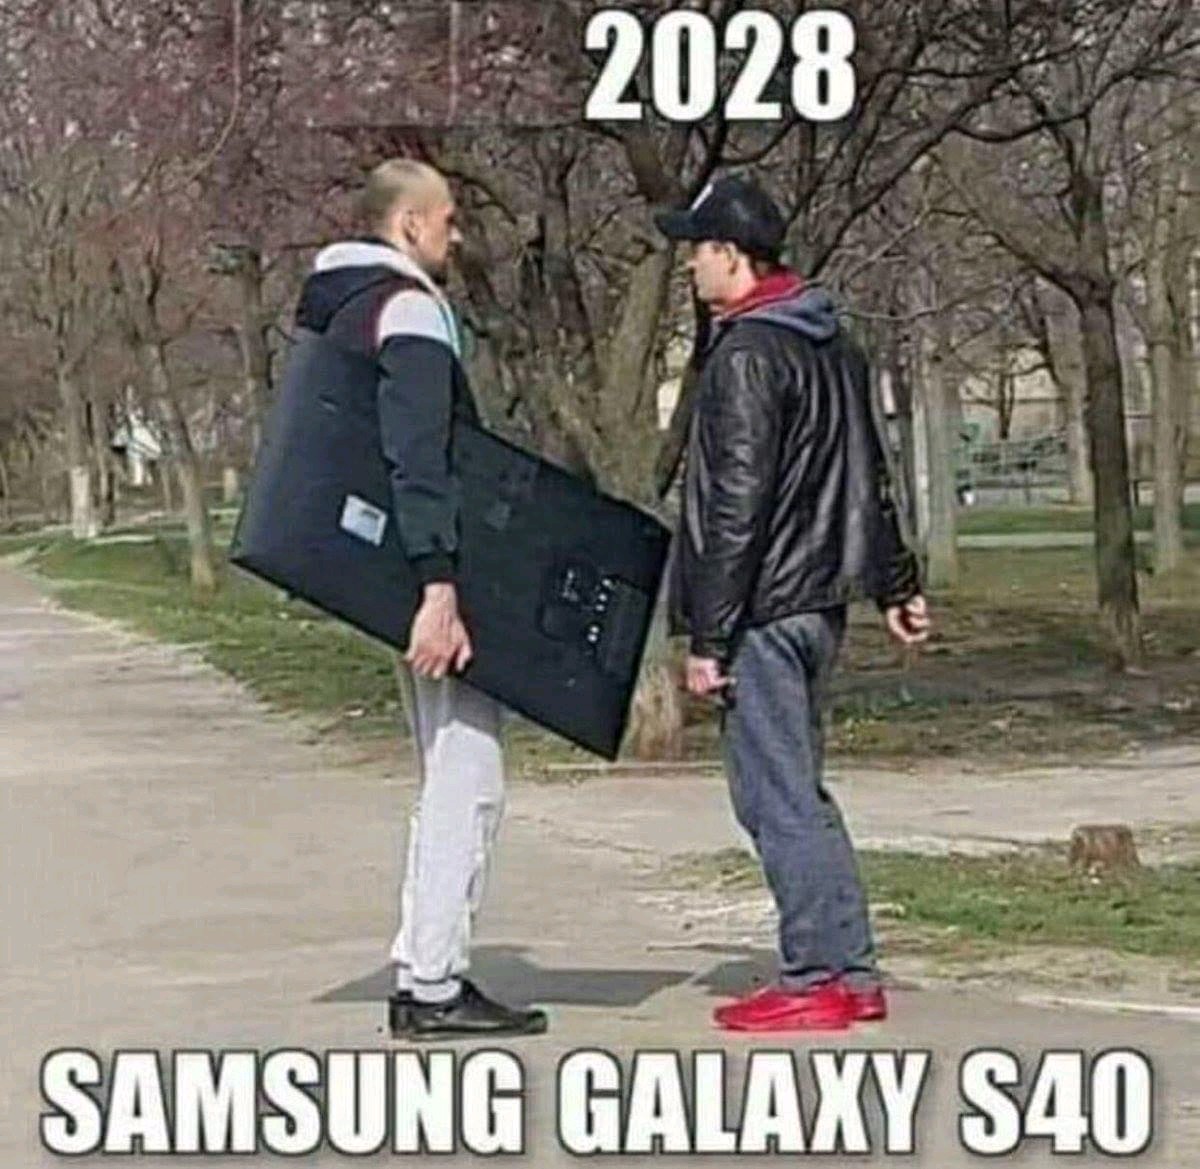 samsung galaxy s40 - 1 2028 Samsung Galaxy S40